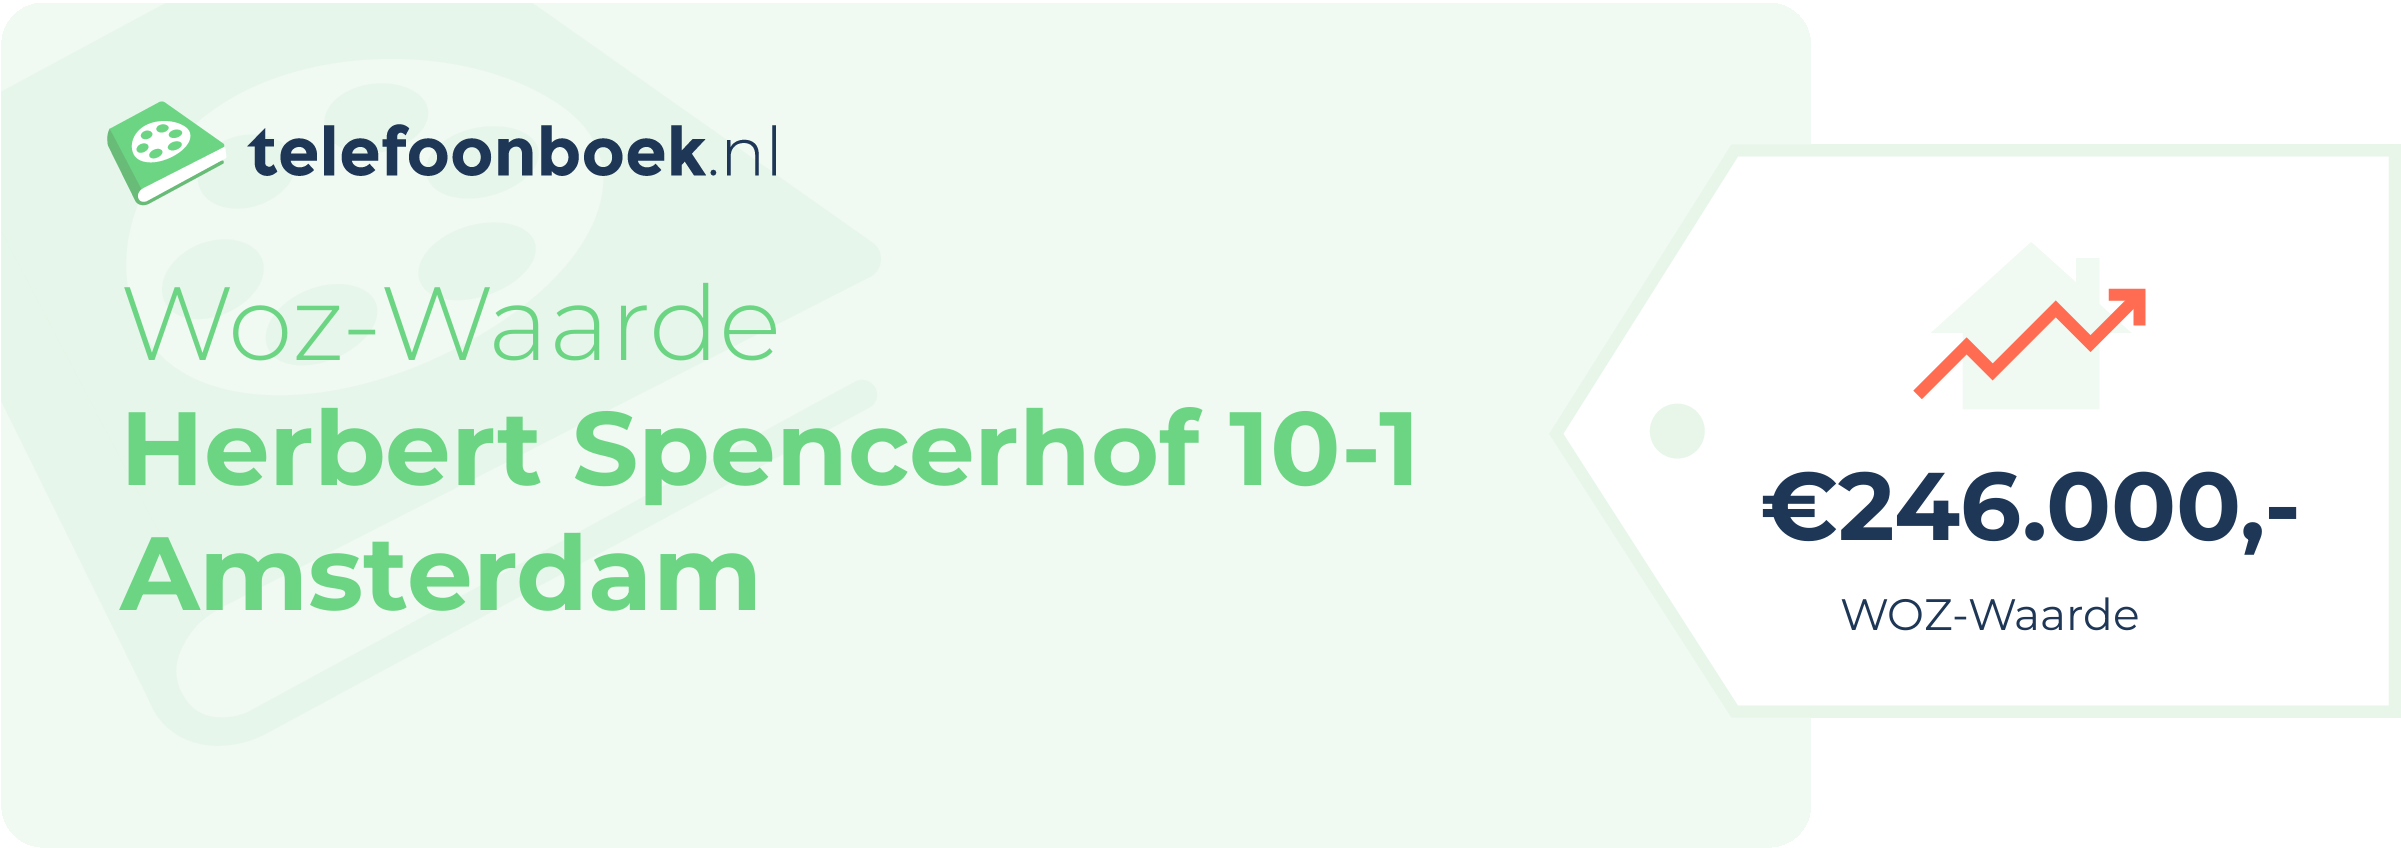 WOZ-waarde Herbert Spencerhof 10-1 Amsterdam